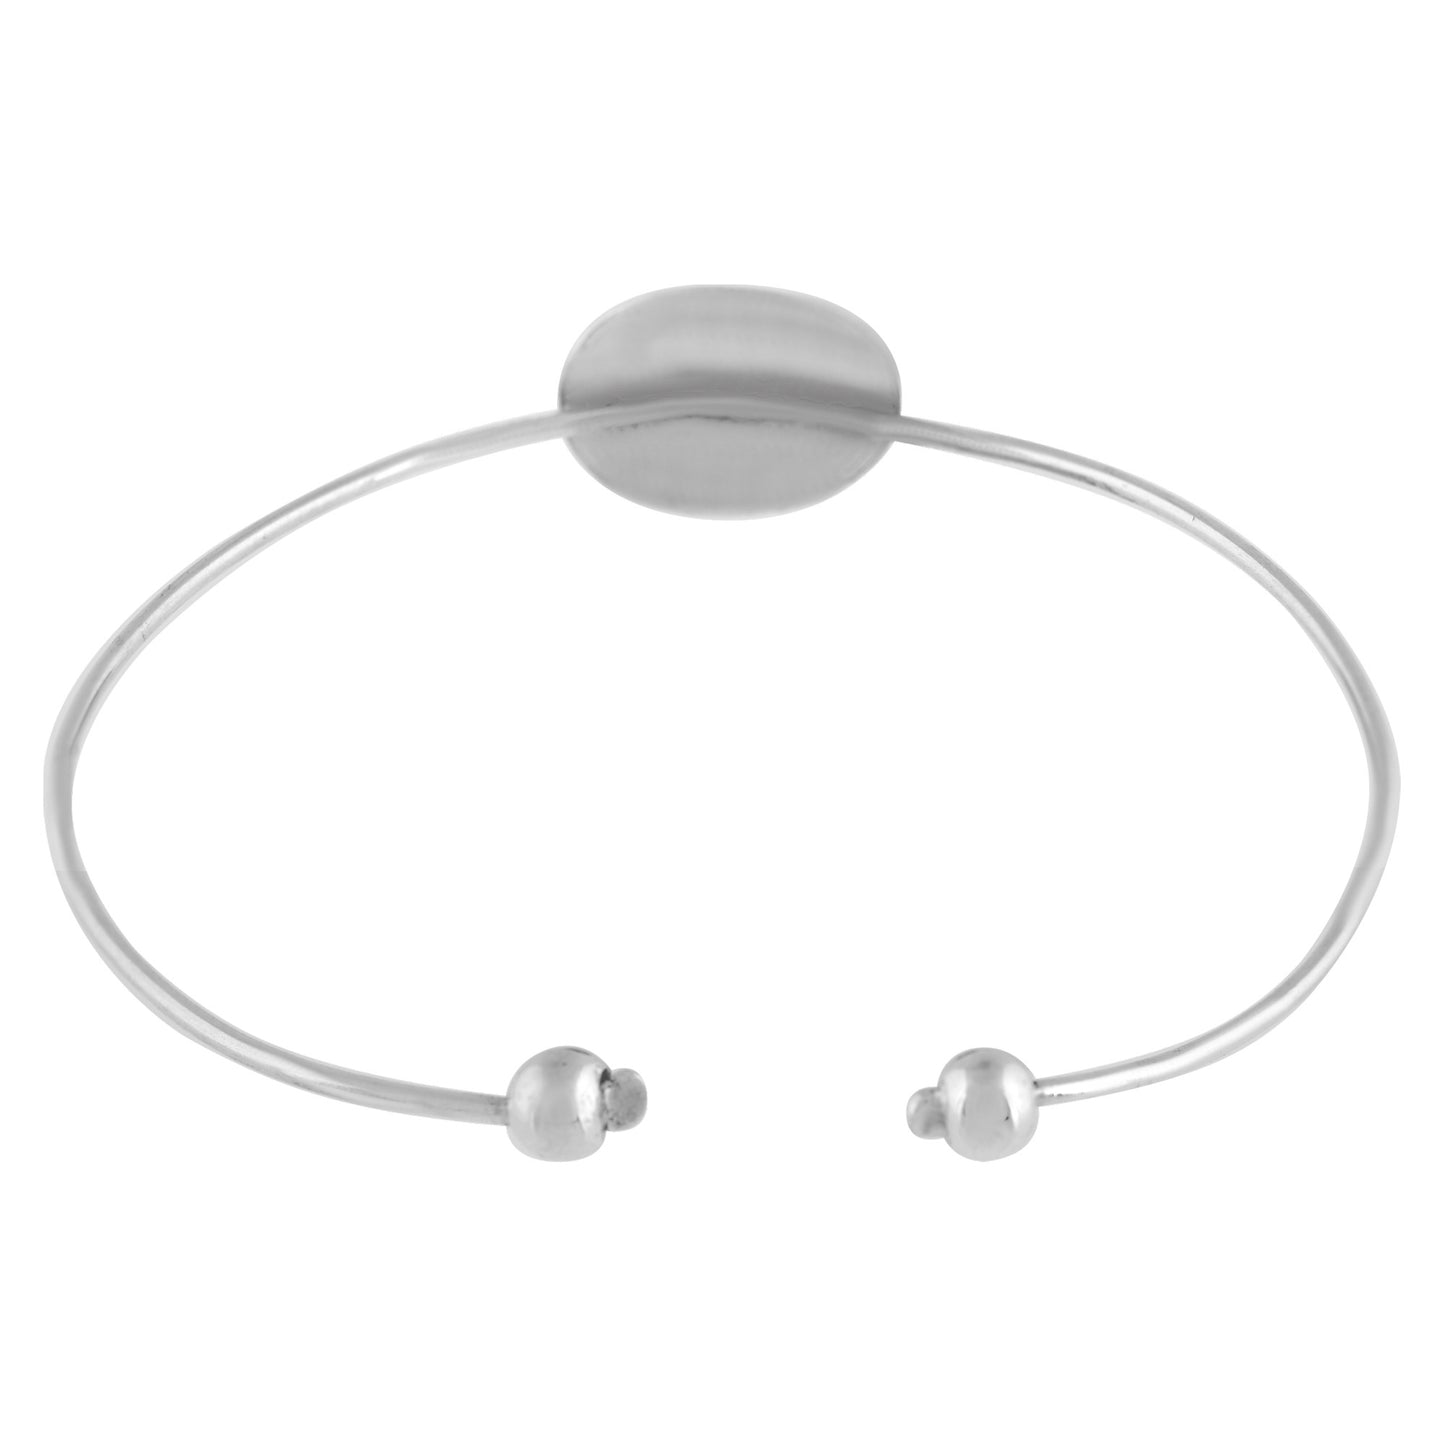 Silver bracelet "Unique Silver" Gio silver925